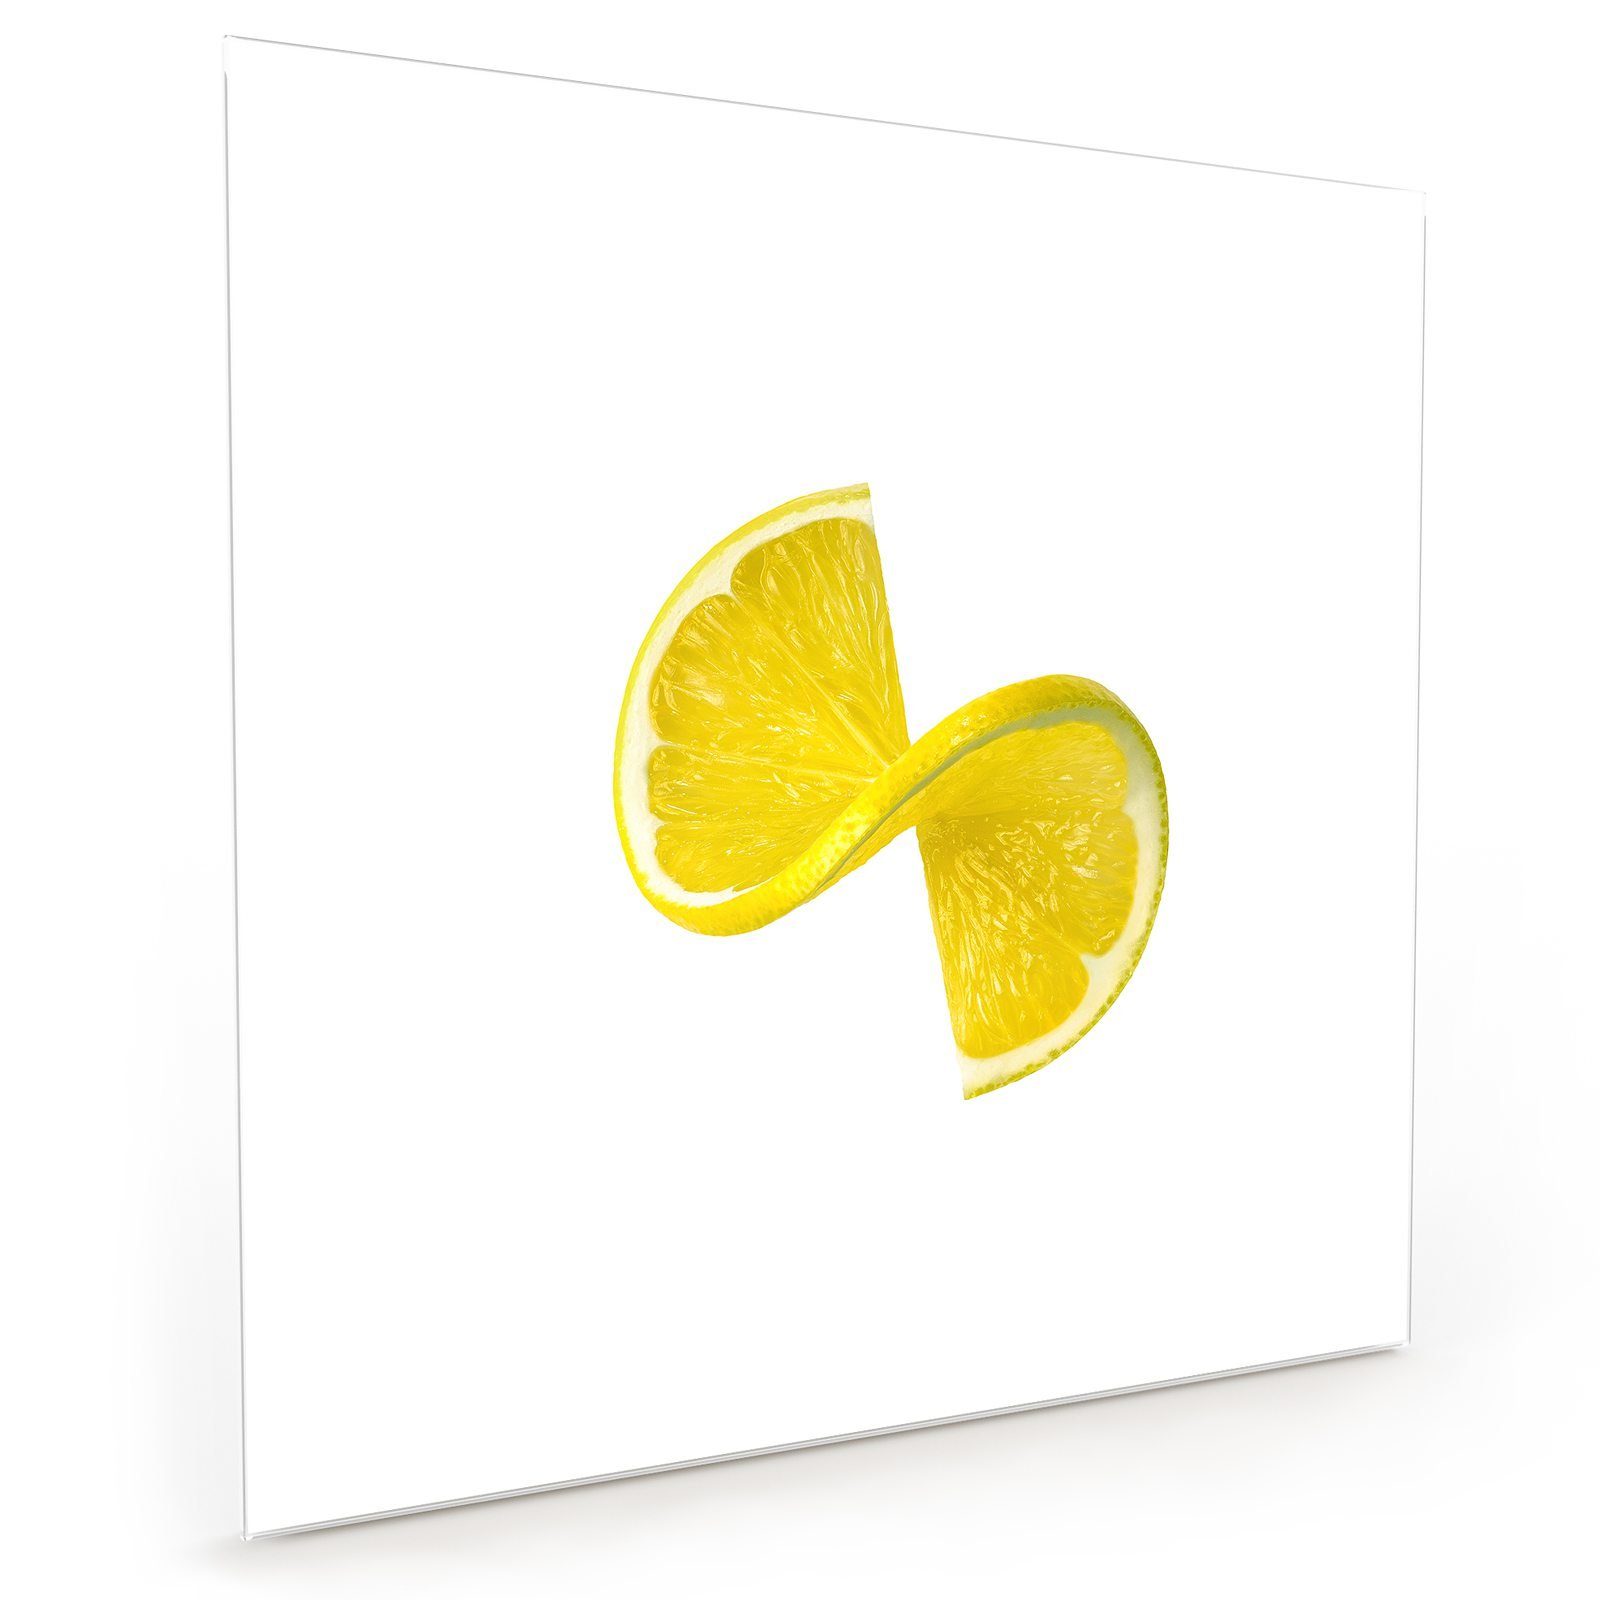 Küchenrückwand Glas Primedeco Küchenrückwand Motiv Zitronenscheibe Spritzschutz mit